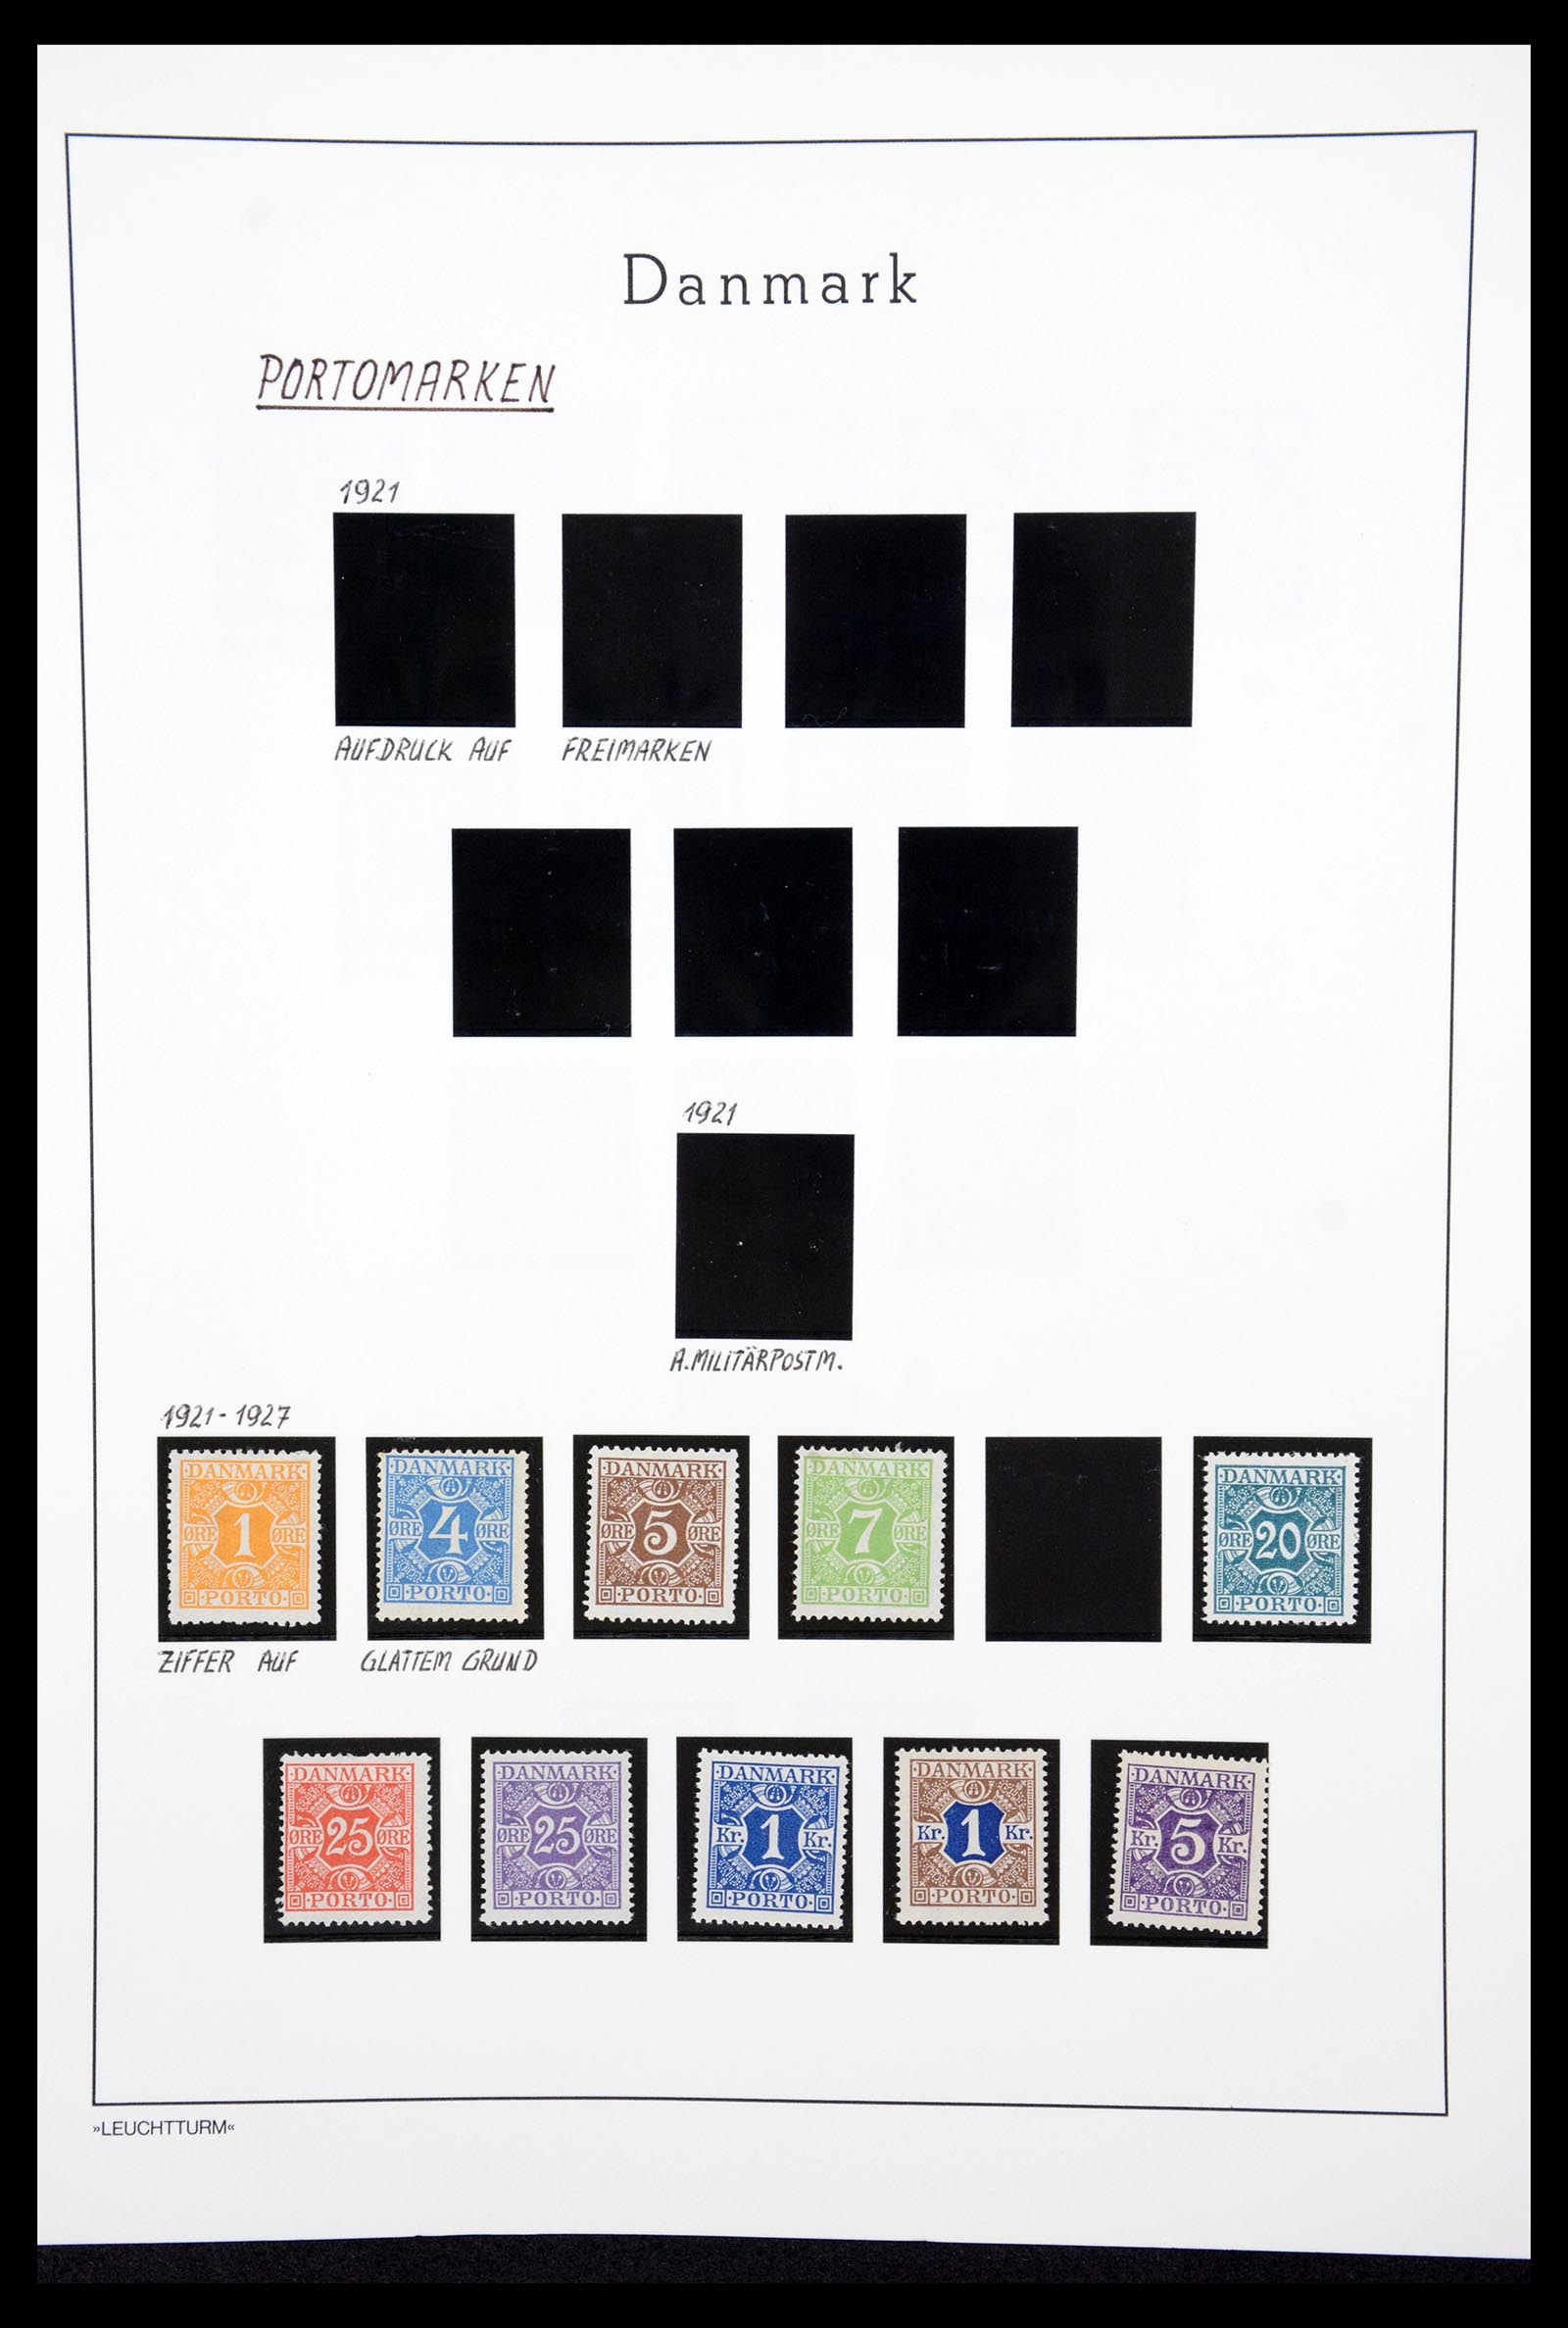 36612 072 - Stamp collection 36612 Denemarken 1851-1990.